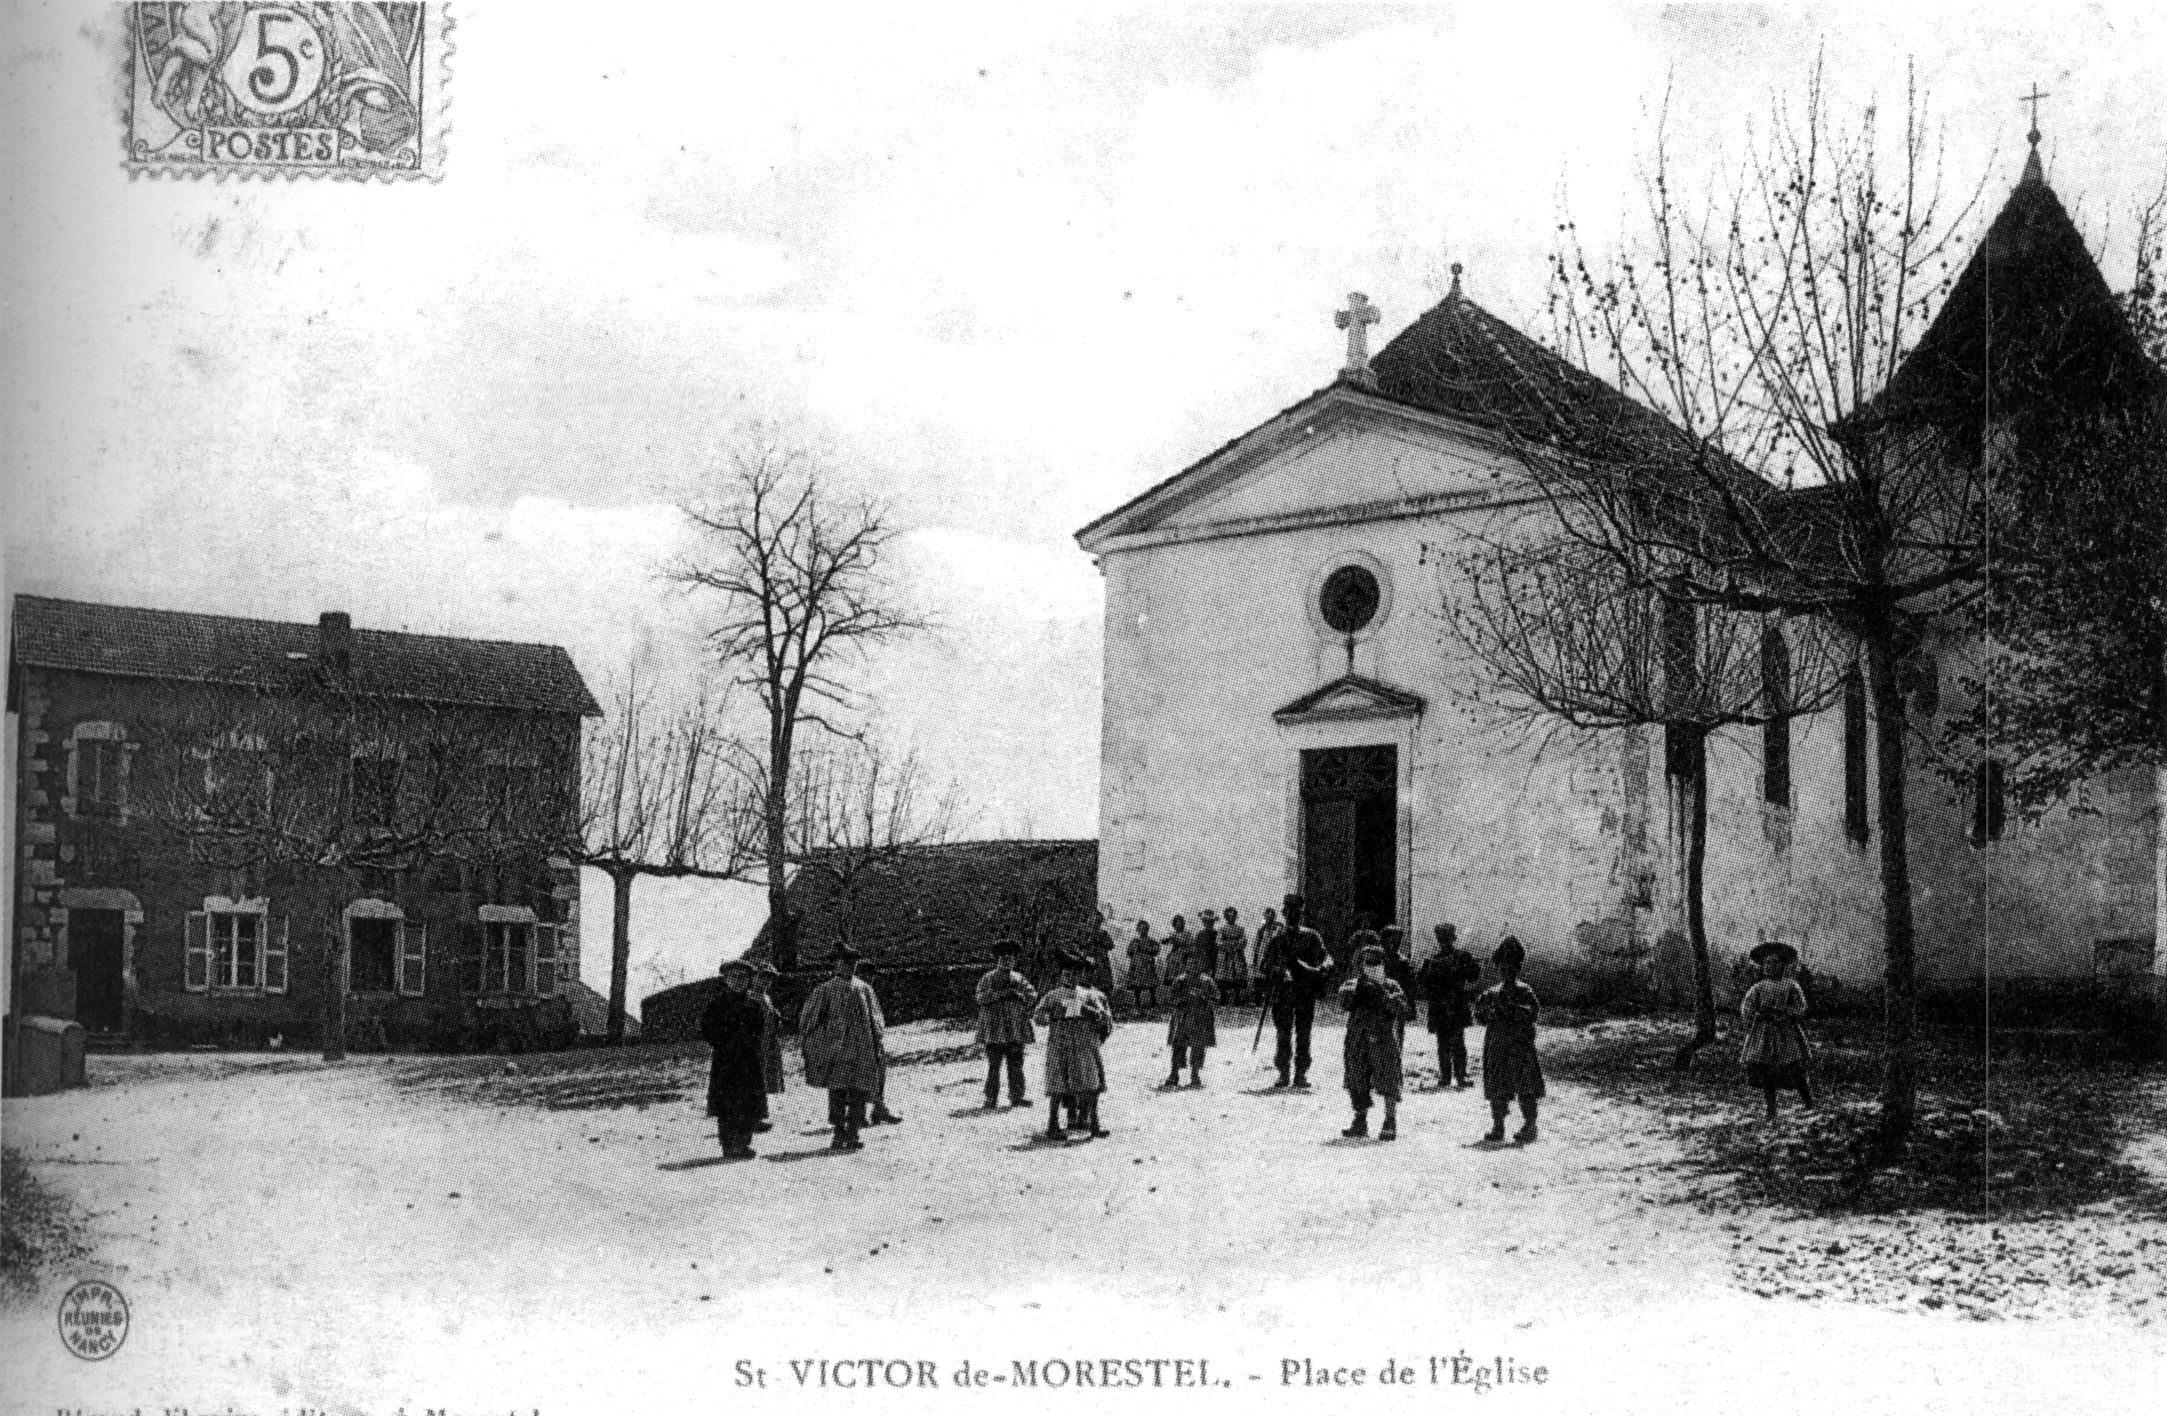 Saint-victor-de-morestel